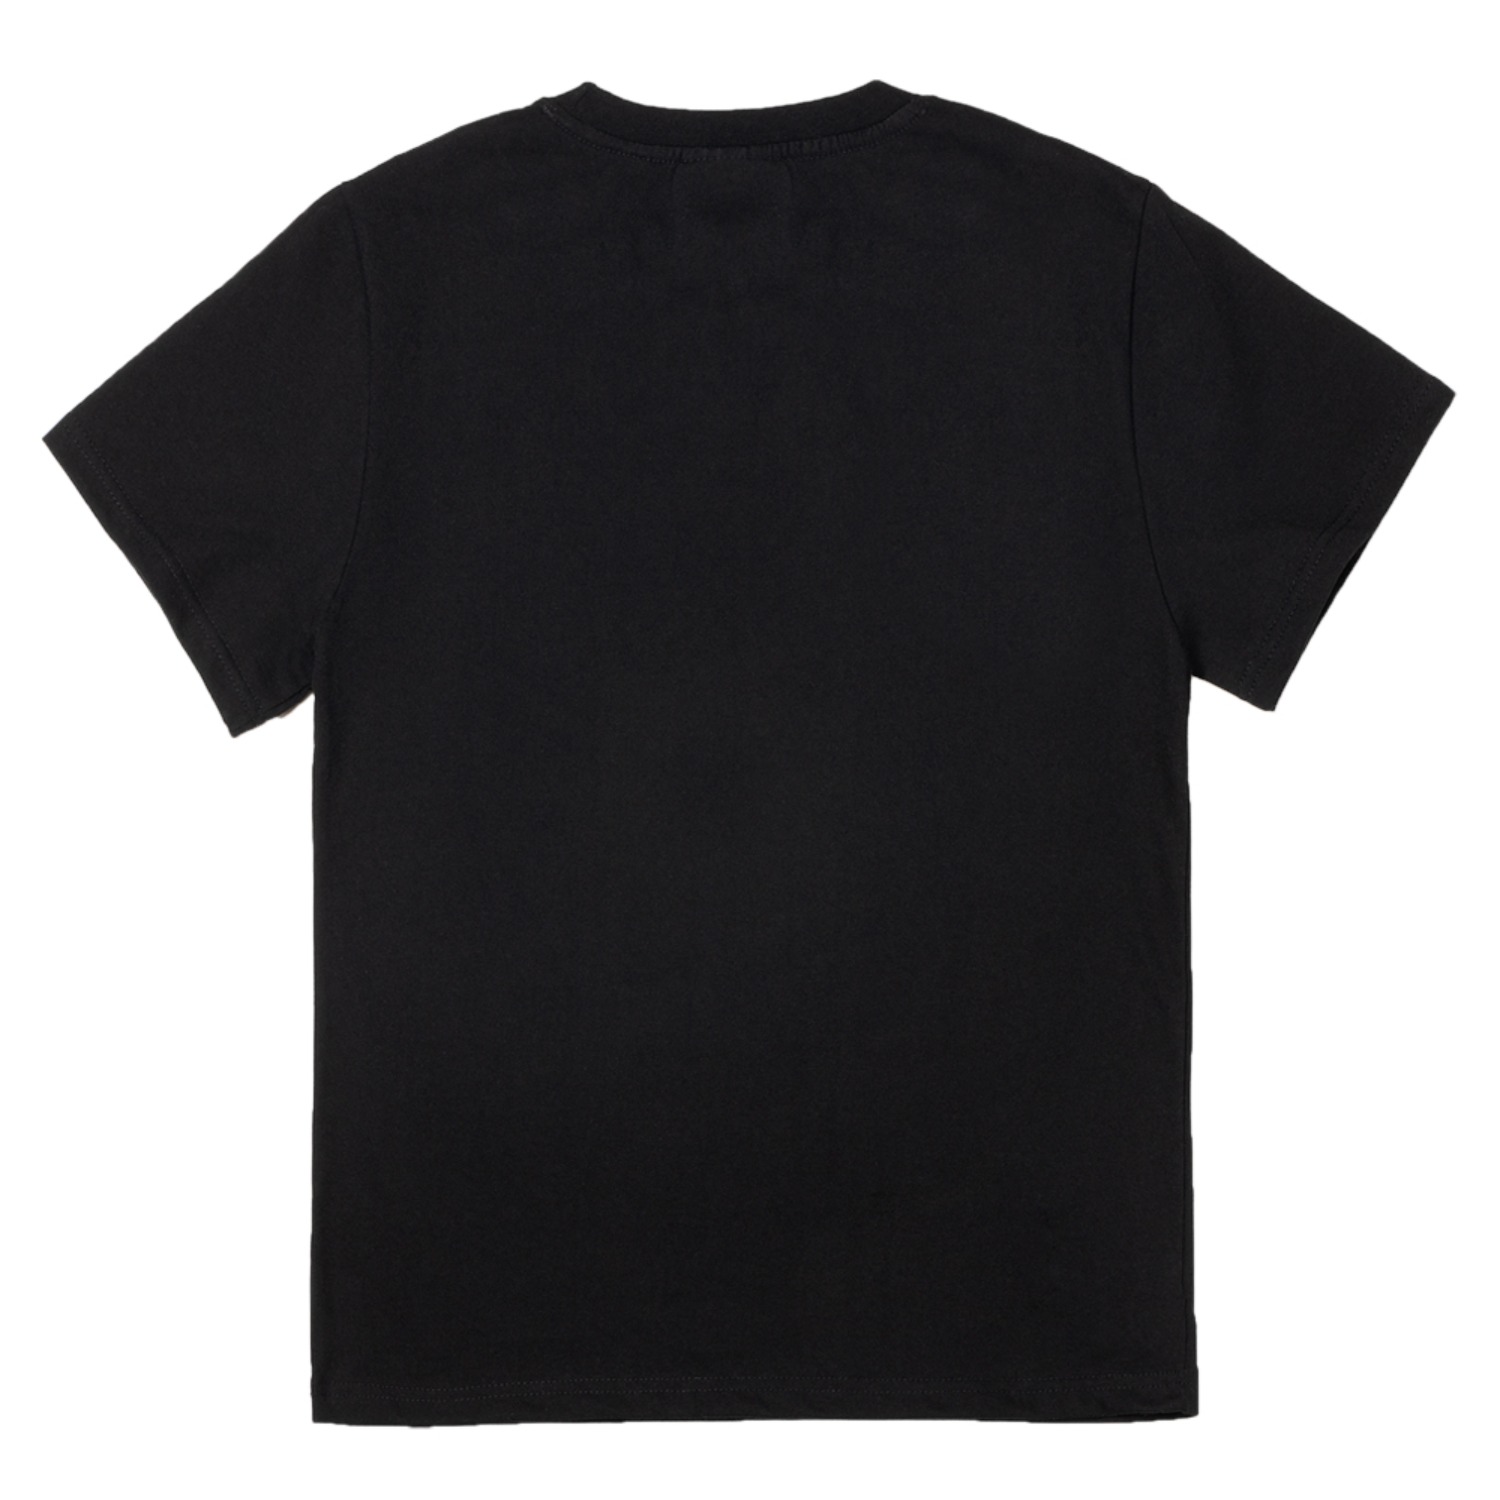 네넹넵뉍 반팔 티셔츠YES Korean SS tshirt (Black)